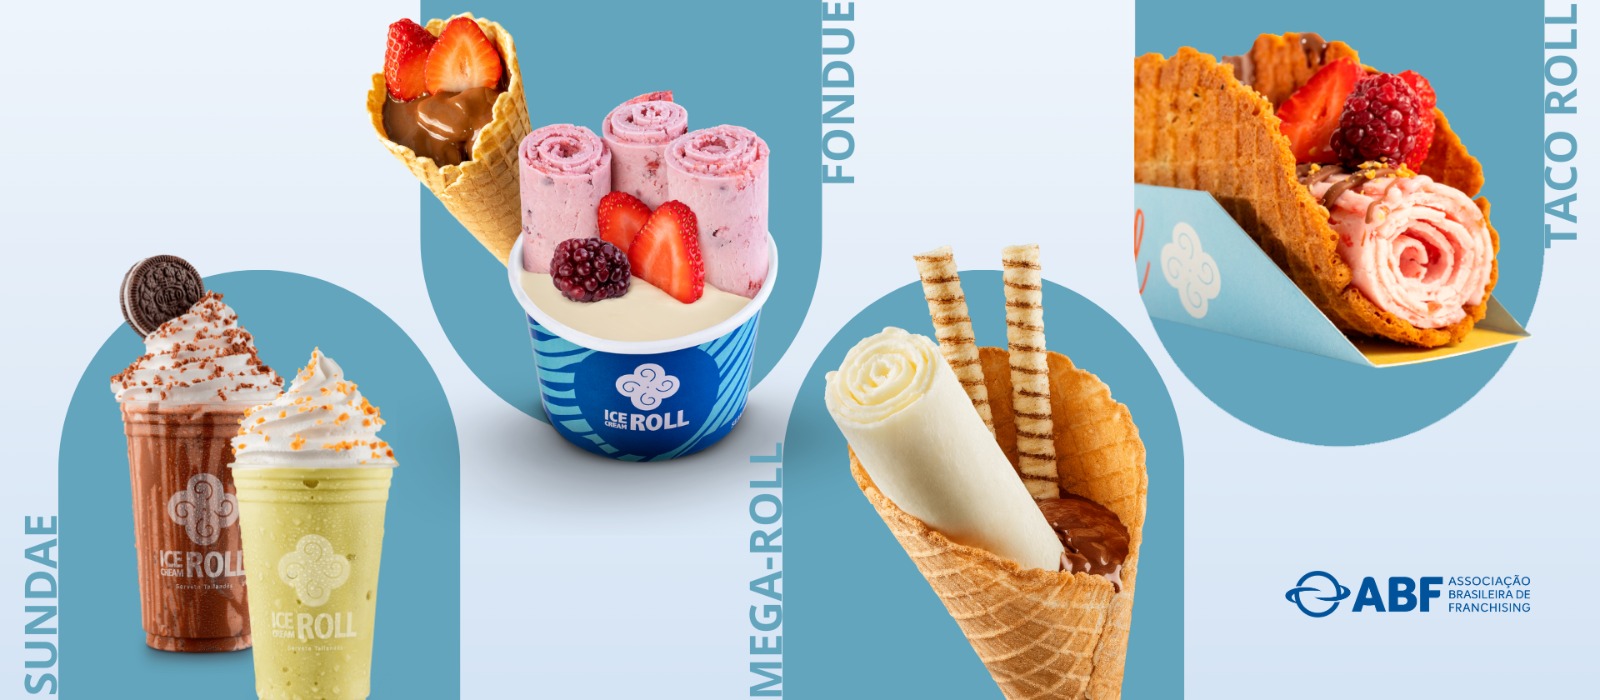 Ice Cream Roll | A maior franquia de sorvete na chapa do mundo!